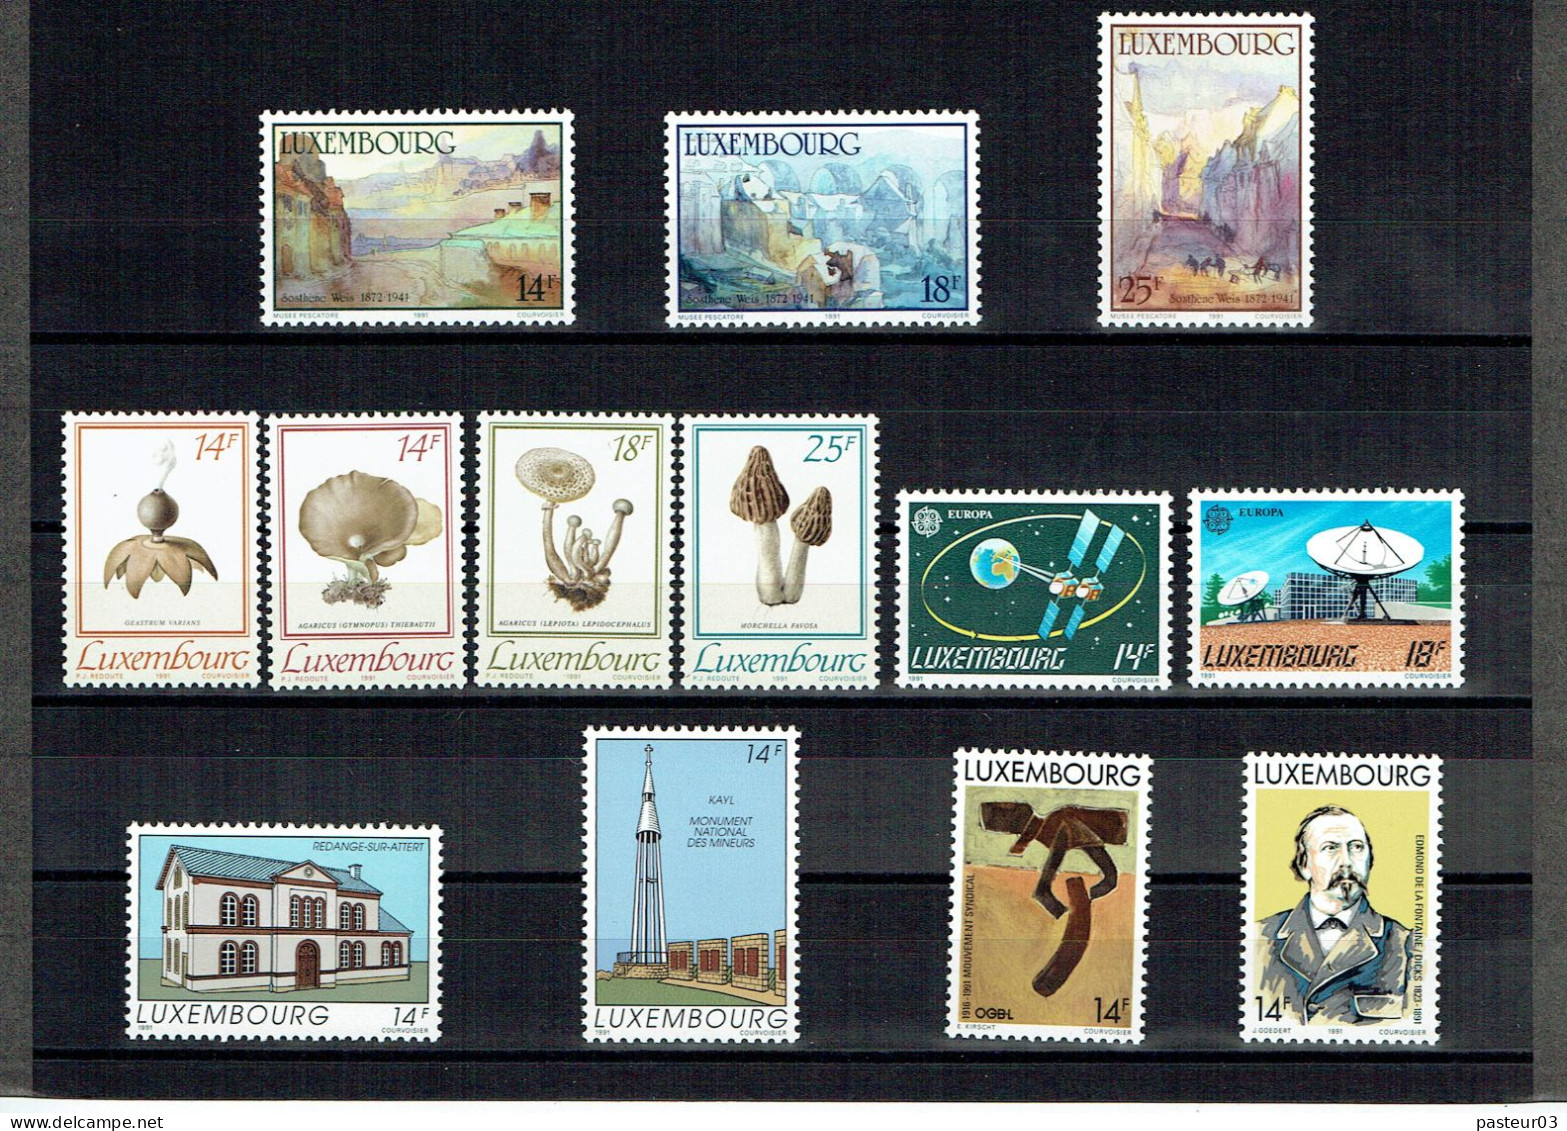 Luxembourg Joli Lot De 1989 à 1993 Présenté Dans Emballage Cartonné P & T Luxembourg Publicité Juvalux 1998 - Verzamelingen